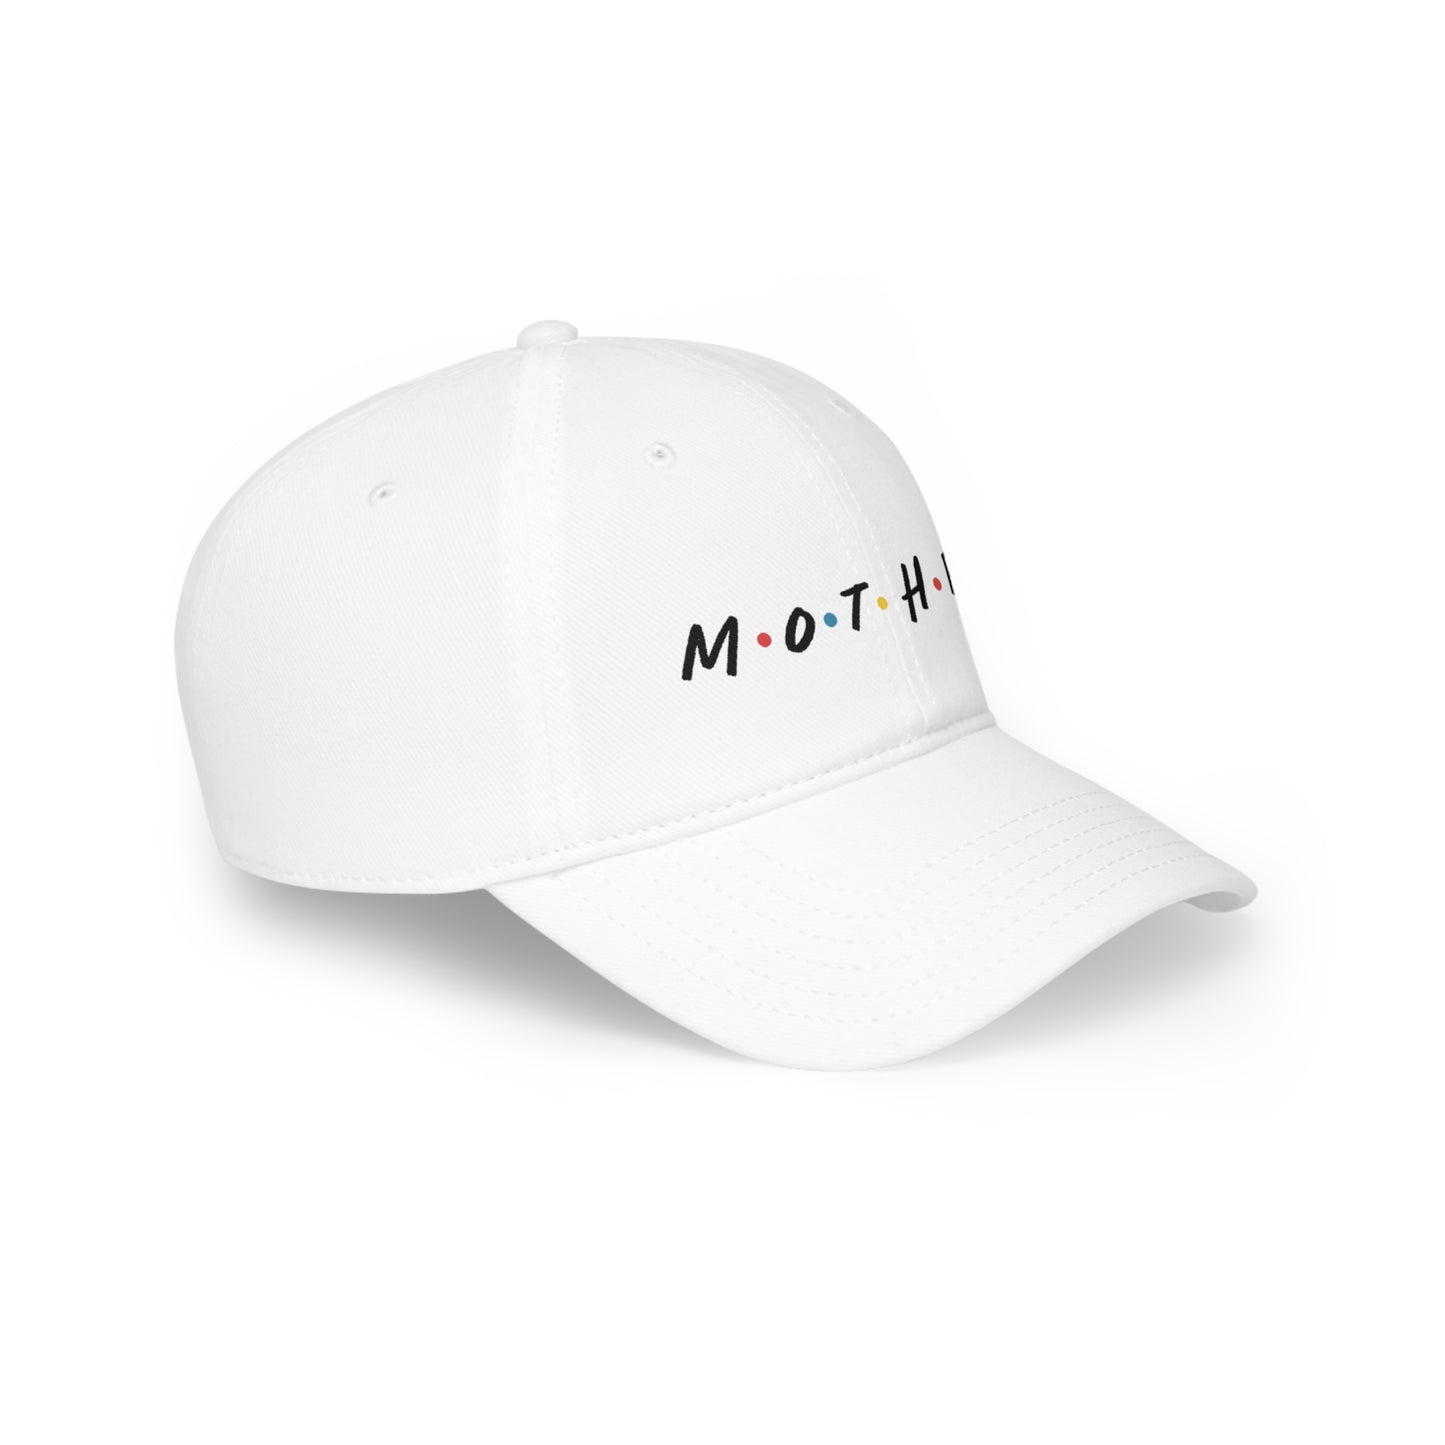 Friend's Font "Mother" Hat